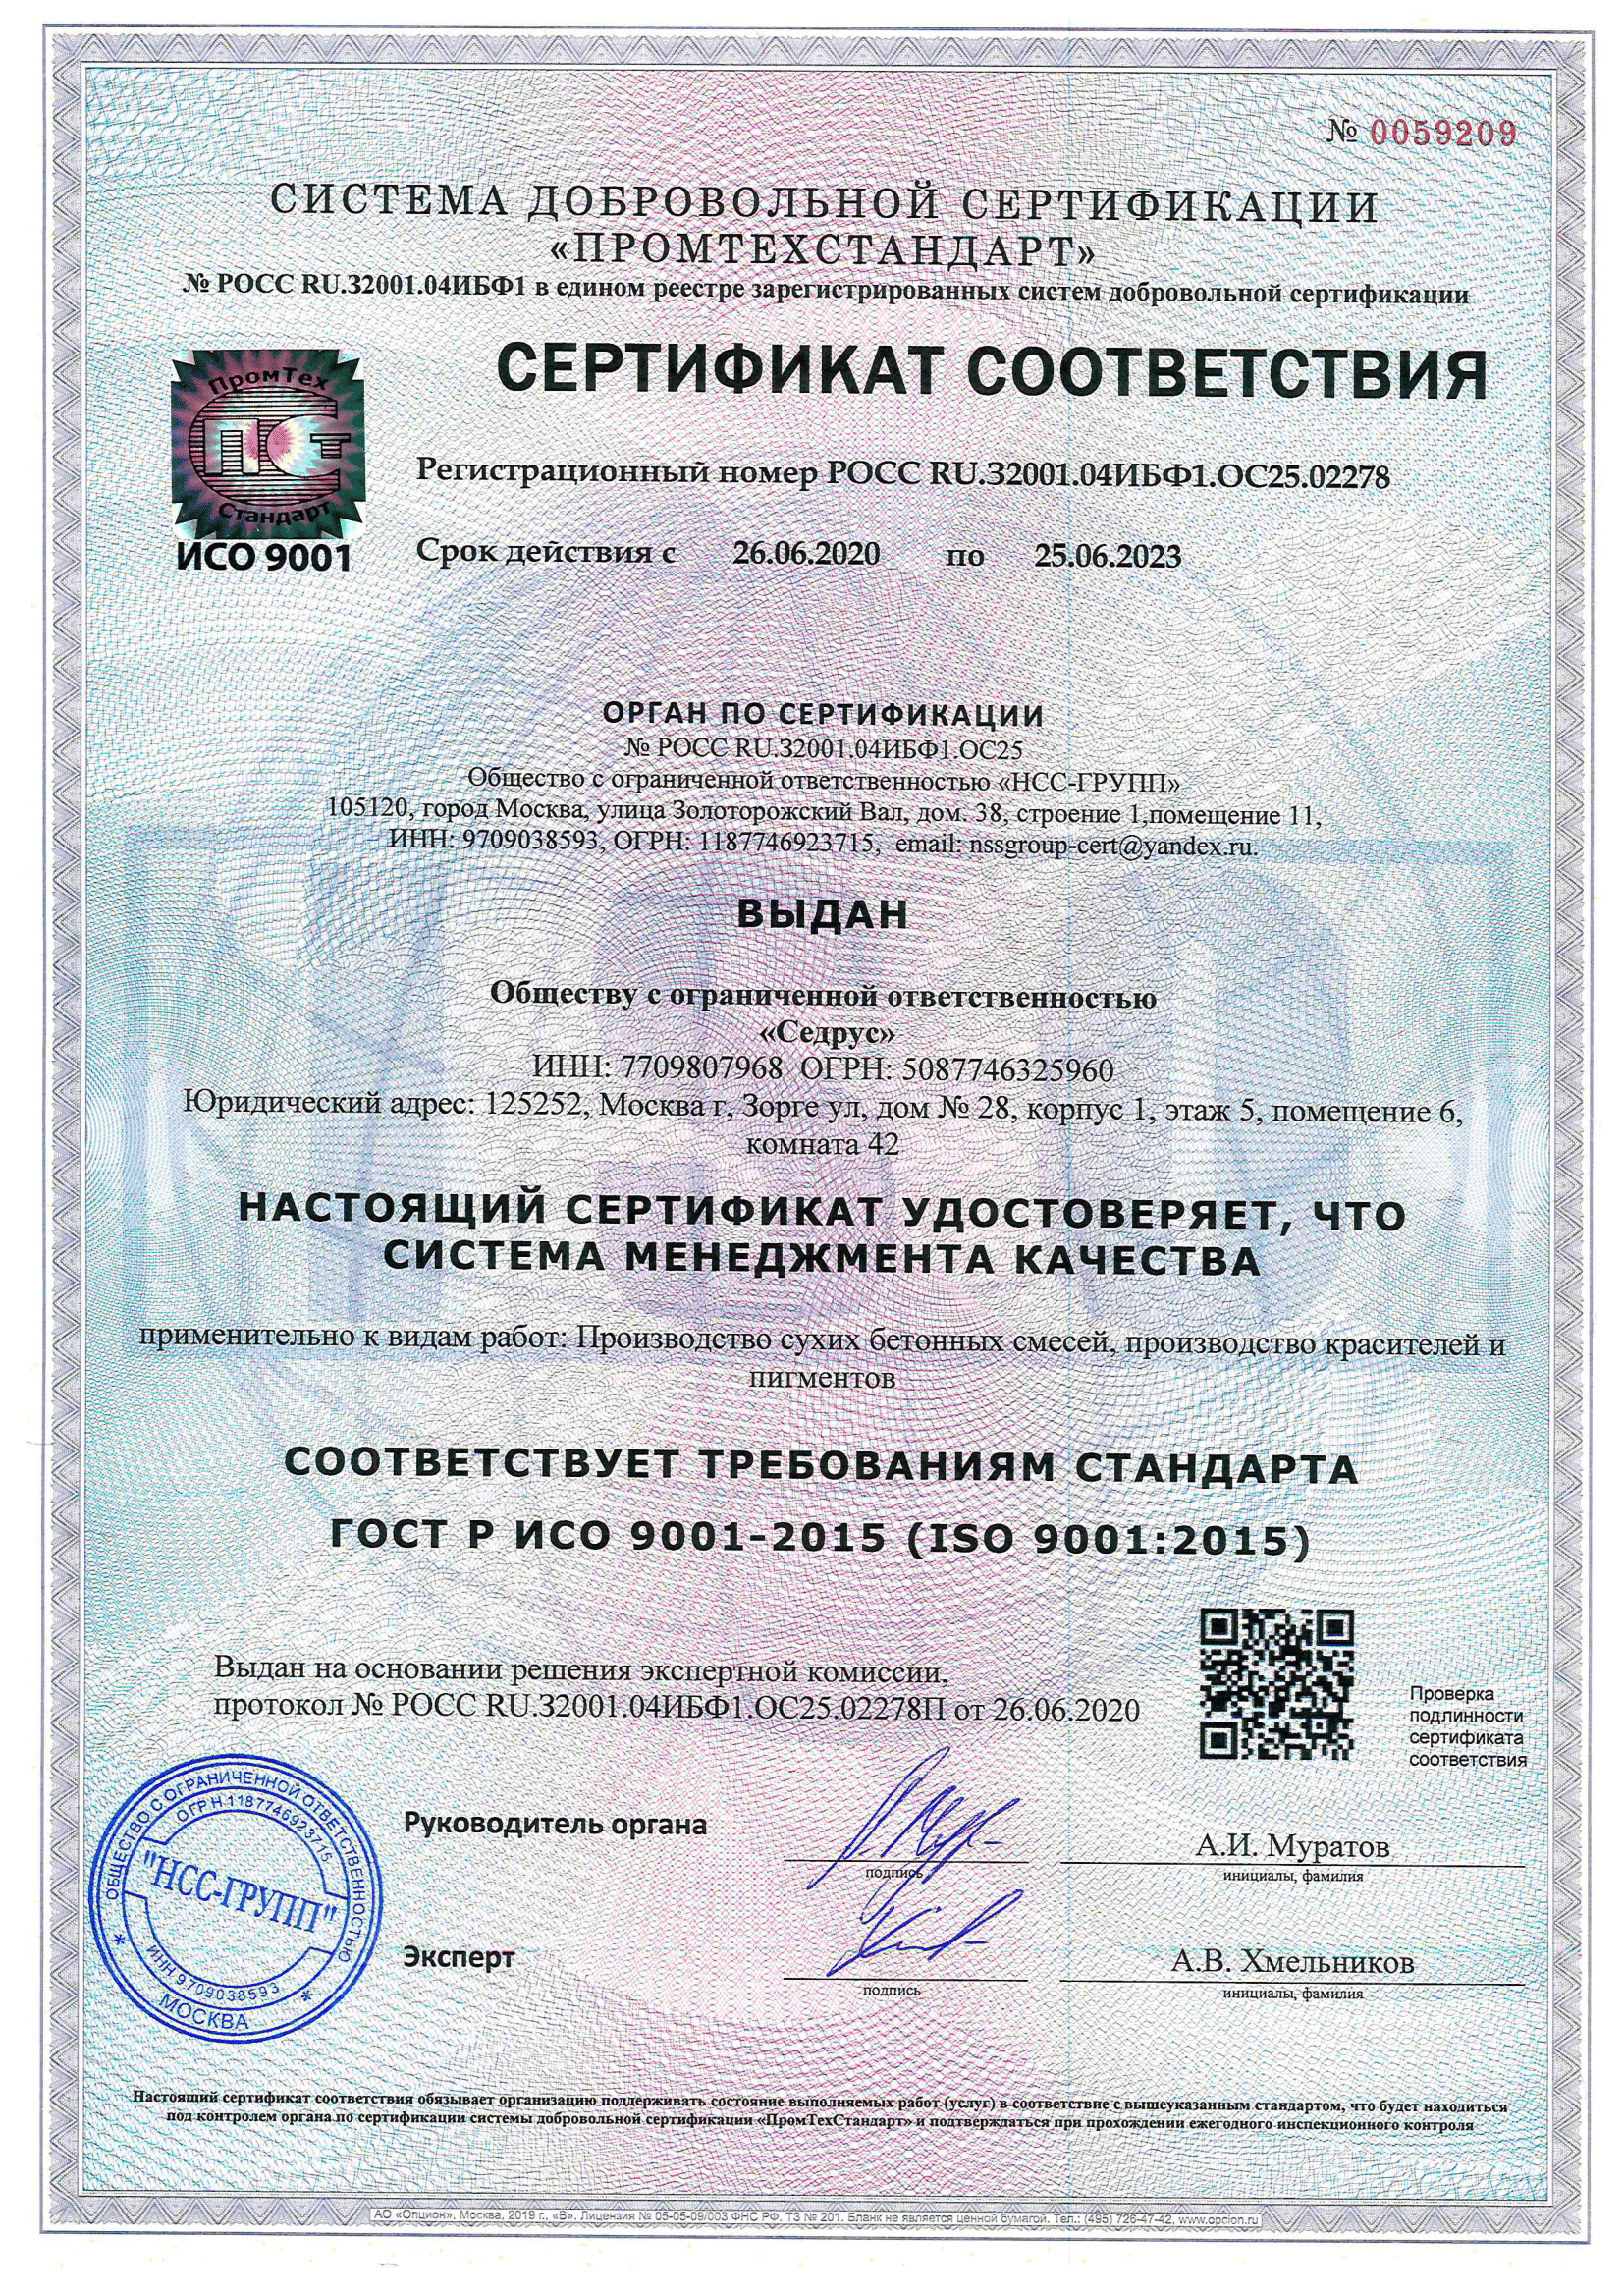 Сертификат соответствия Системы менеджмента качества (ISO 9001:2015)